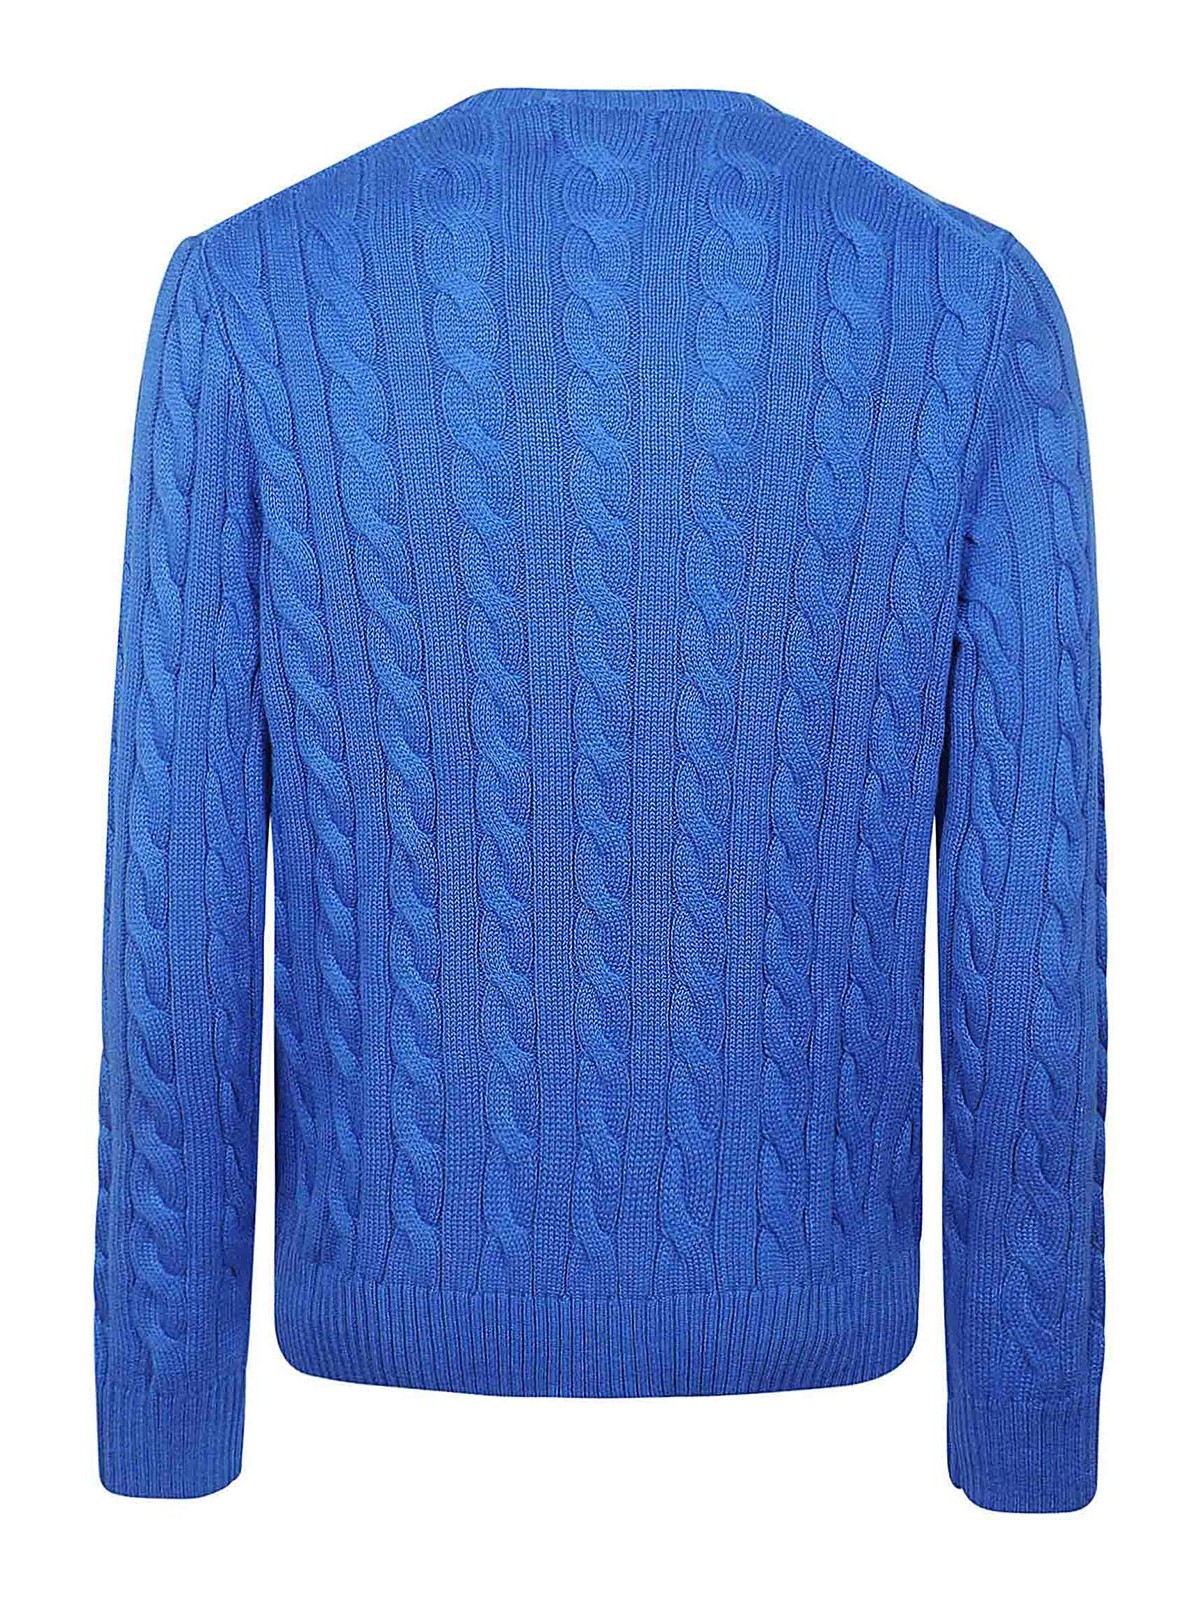 Shop Polo Ralph Lauren Blue Cable-knit Cotton Sweater